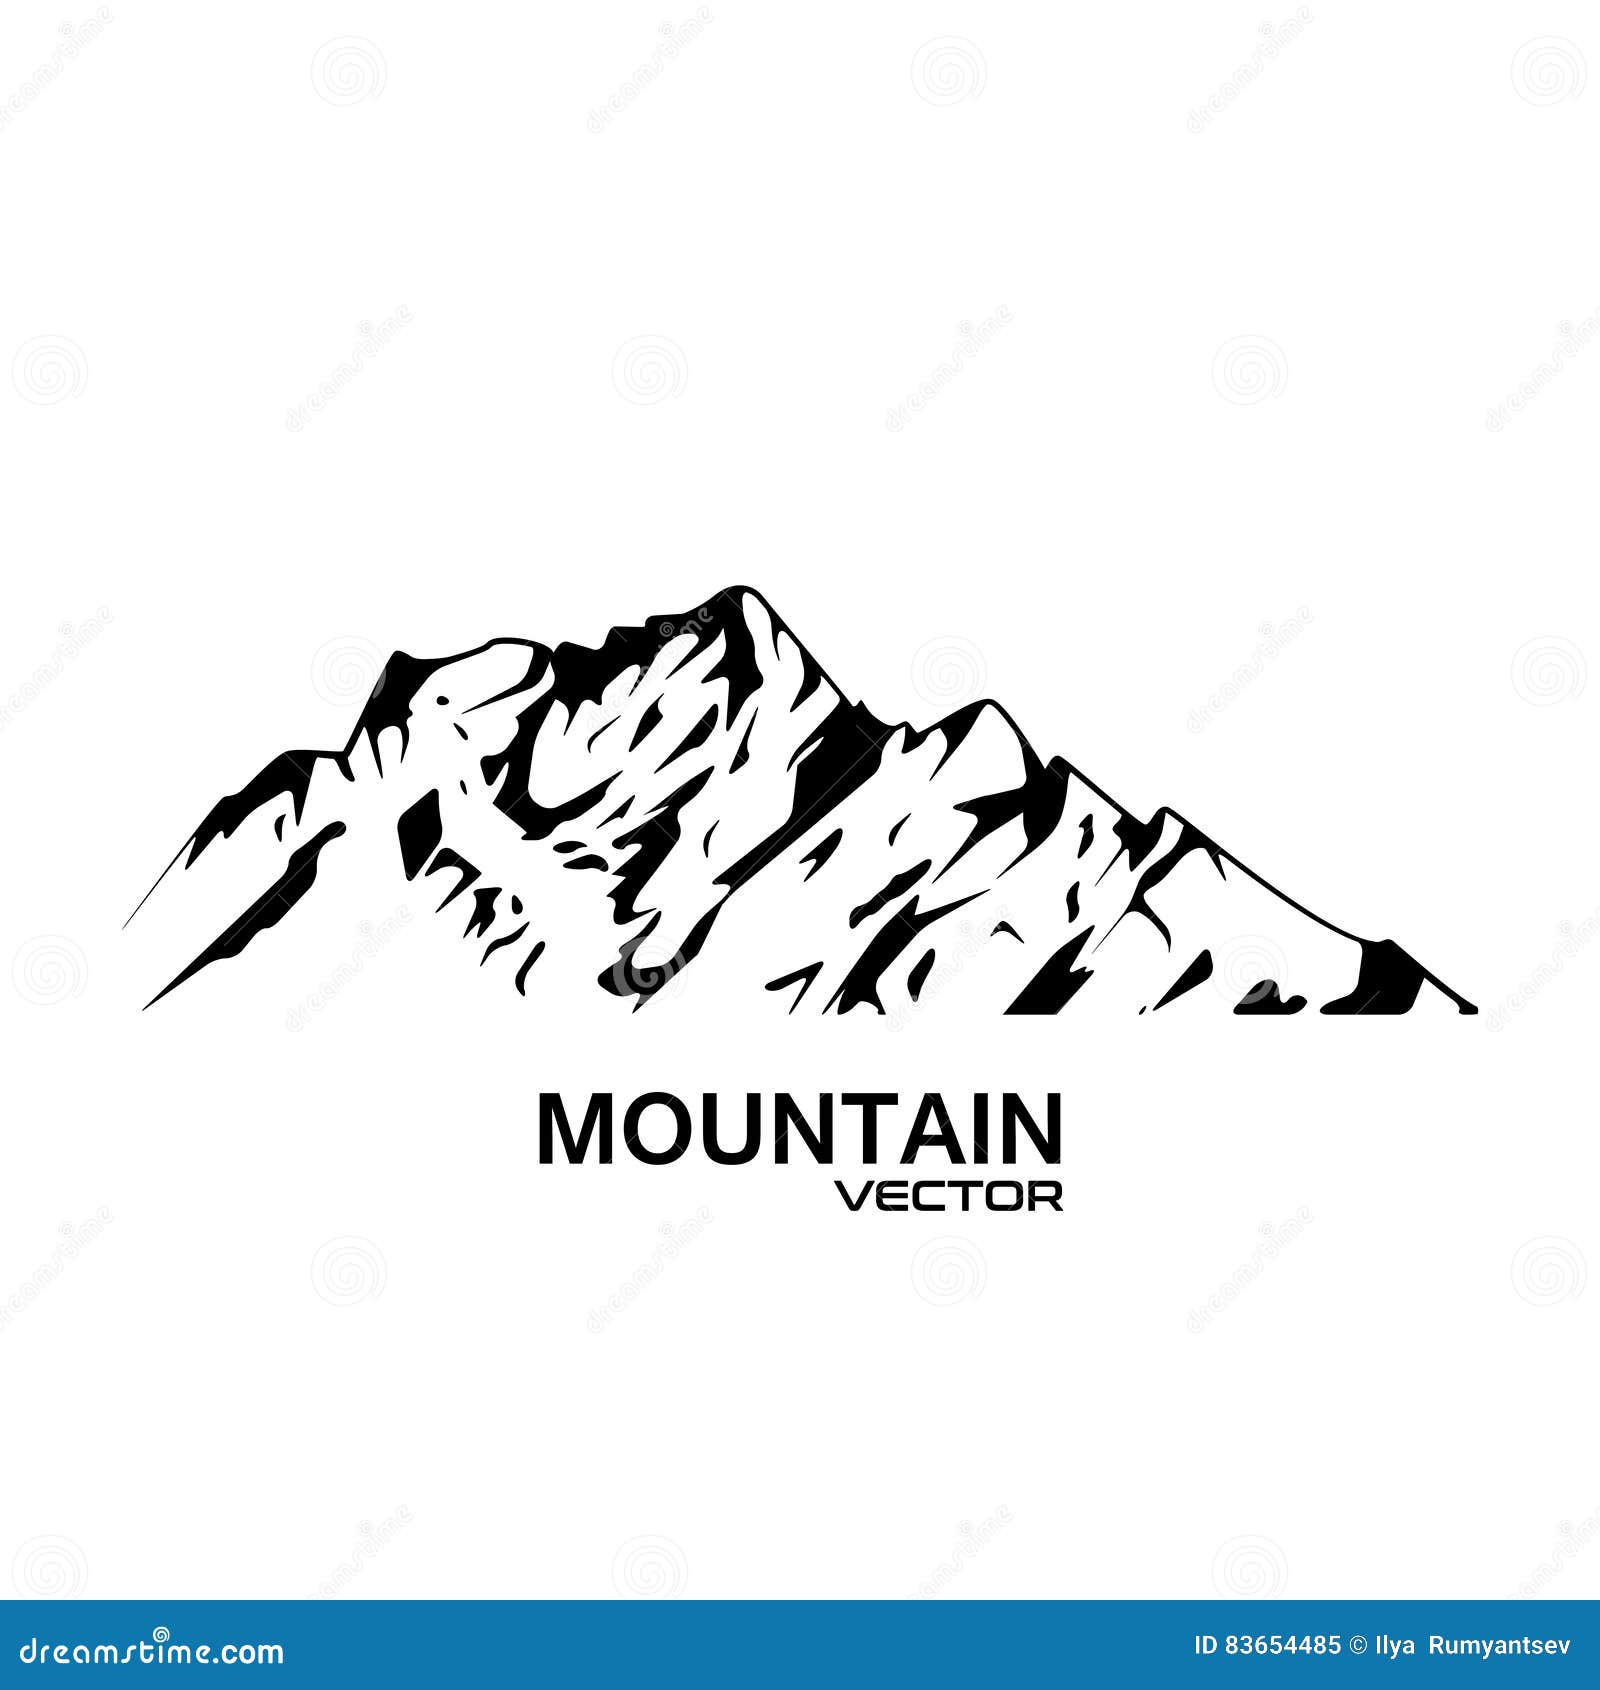  mountain range silhouette